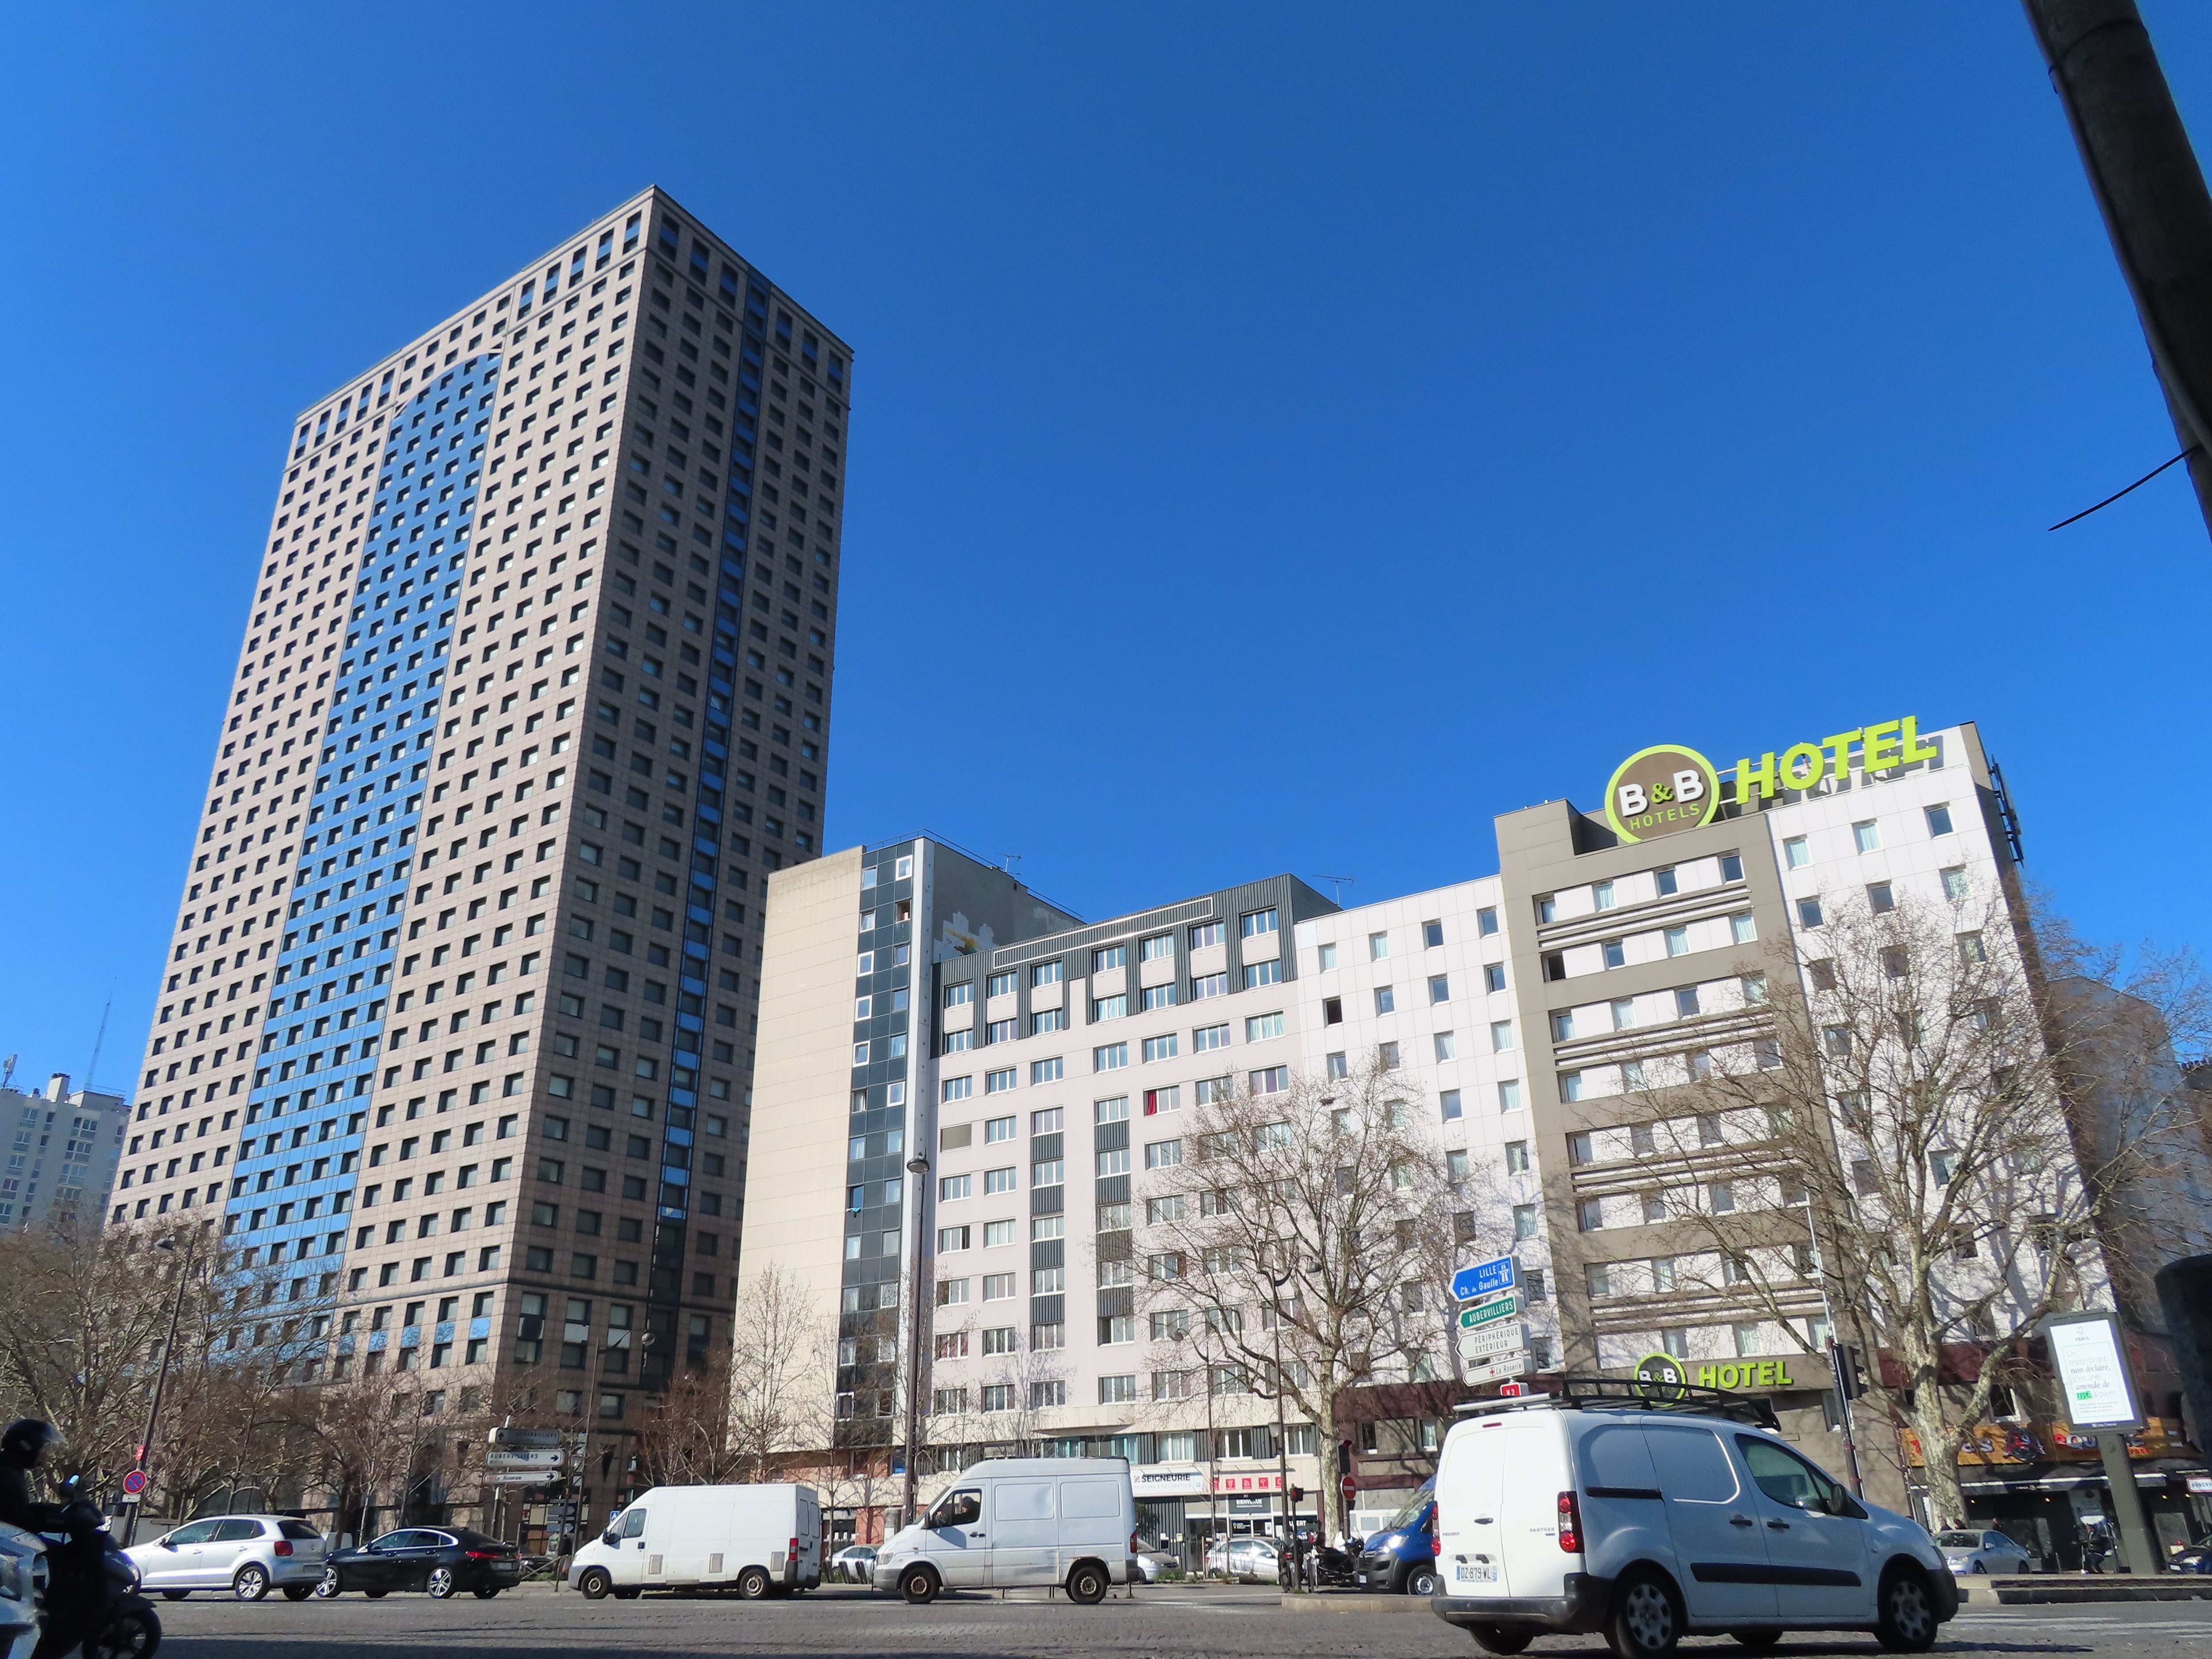 Aubervilliers (Seine-Saint-Denis), le 18 mars. La tour La Villette, bâtie en 1973 et haute de 35 étages, va être modifiée par Eurasia Groupe, qui vient de l'acquérir. LP/A.A.